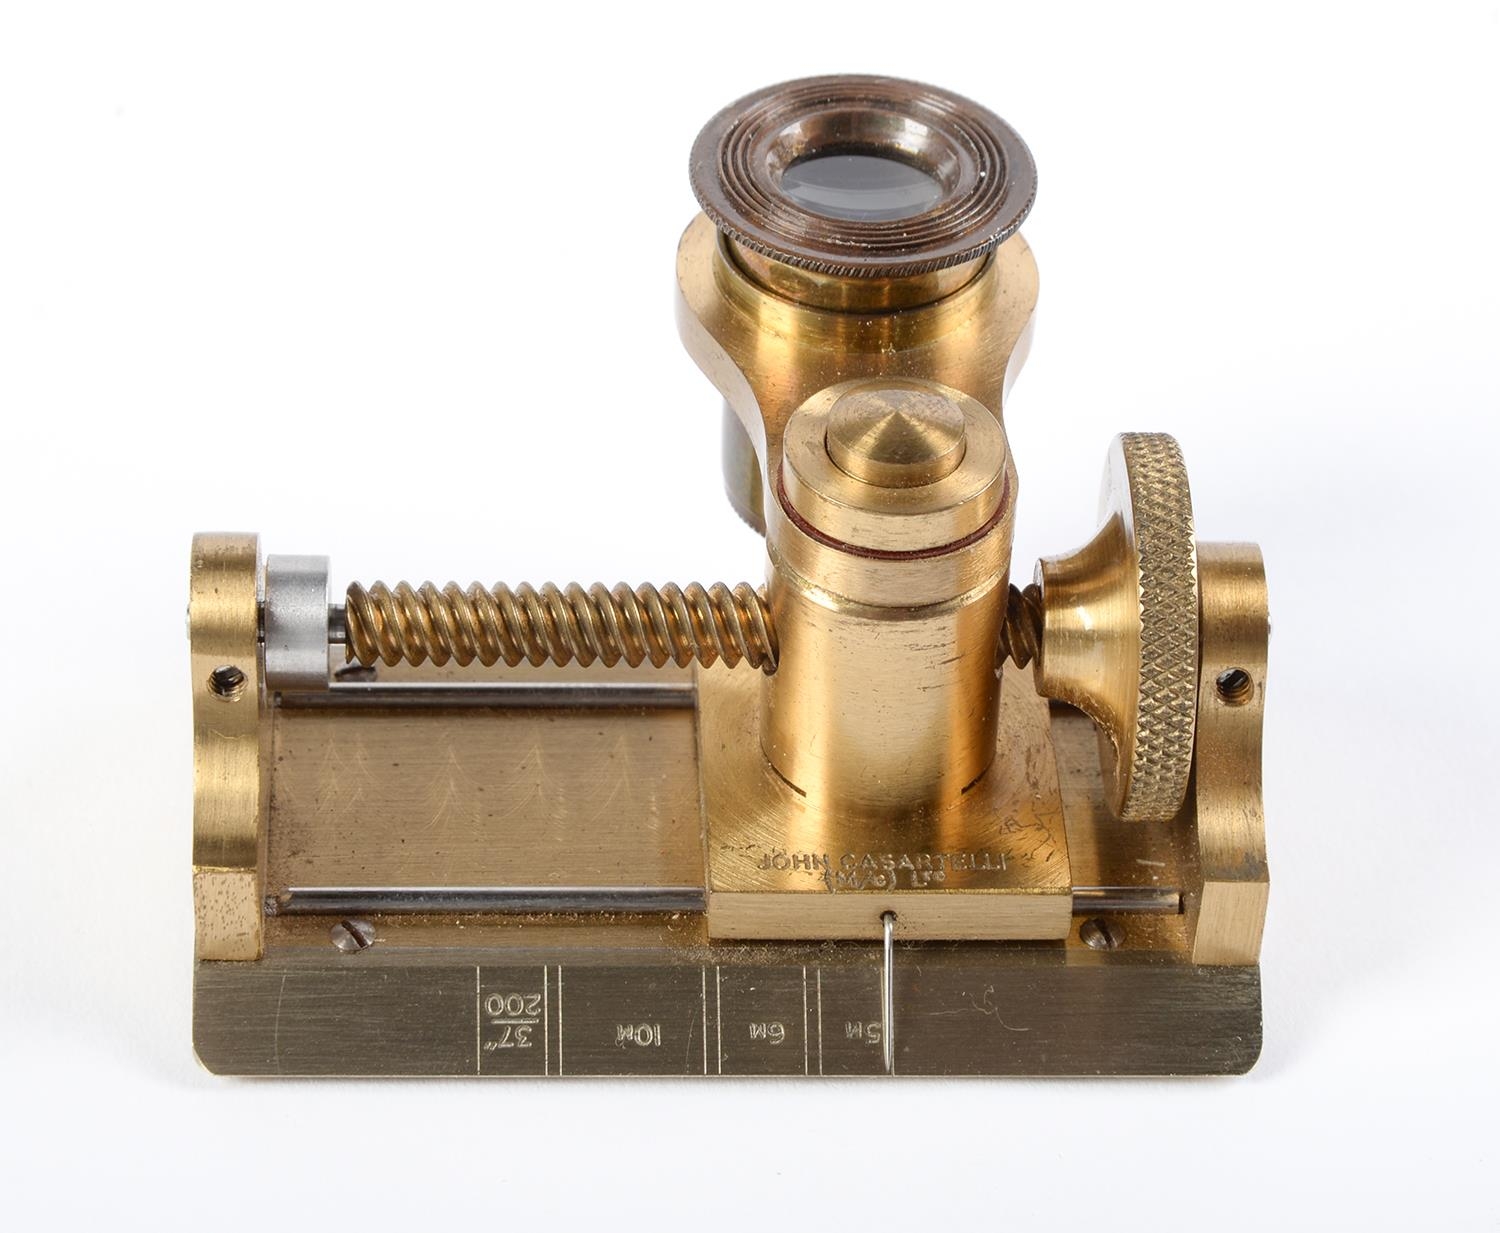 Linen prover. A brass thread-counter, John Casartelli Ltd Manchester 4, first half 20th c, 75mm l